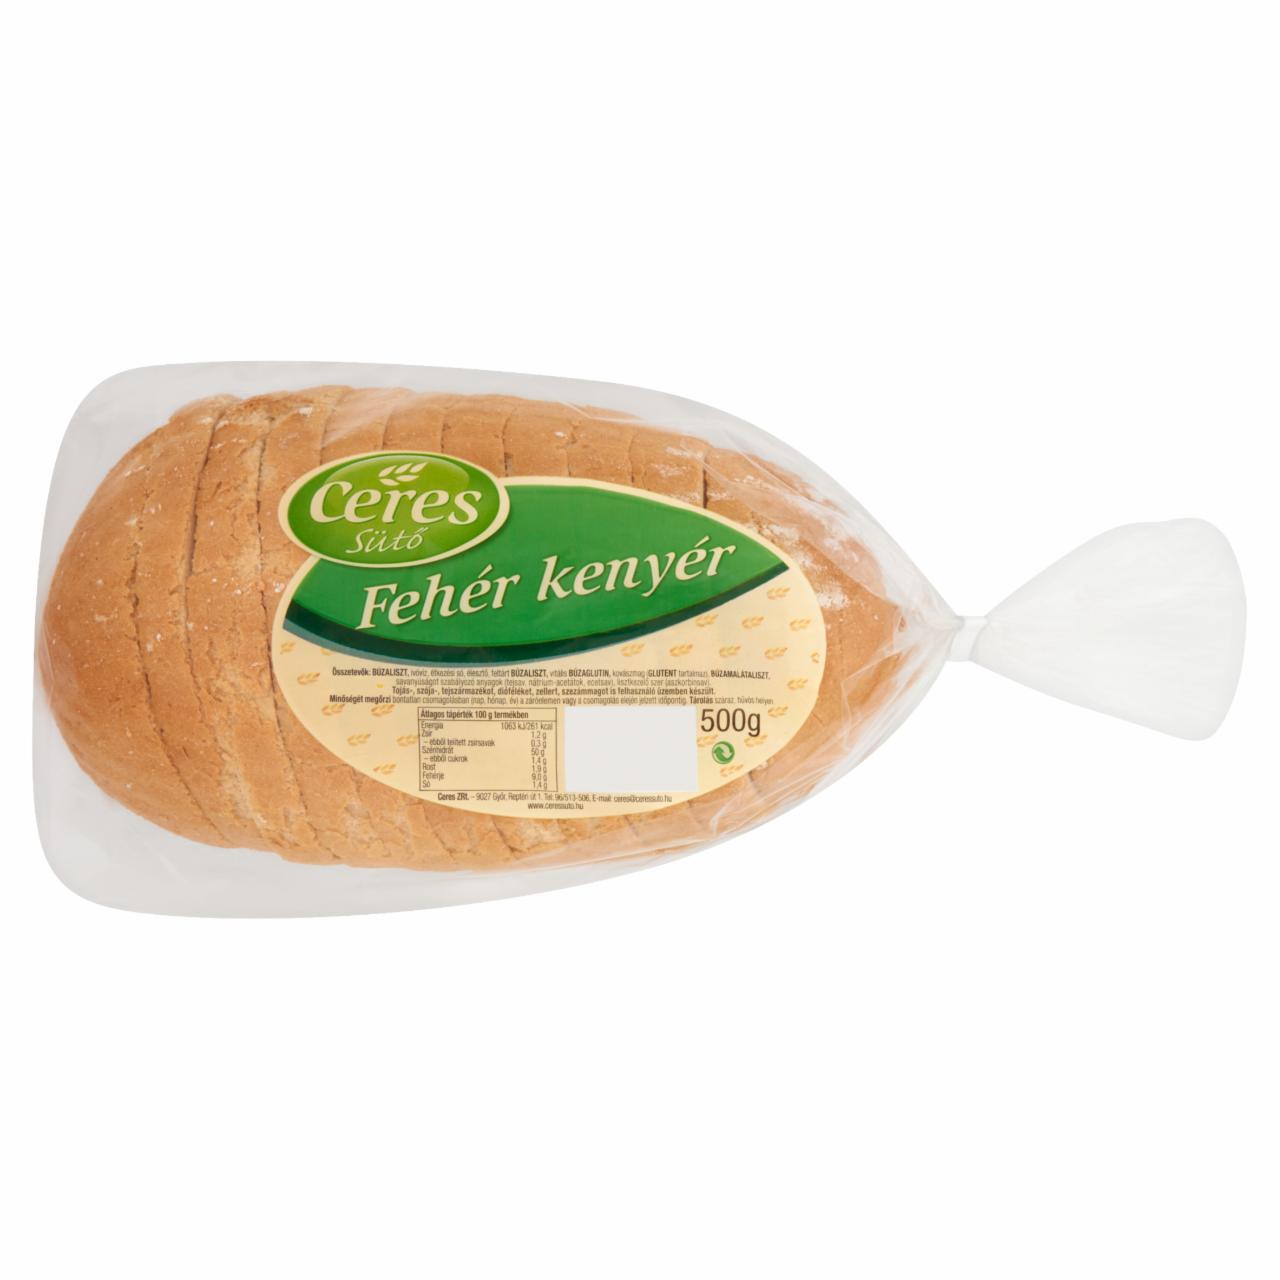 Képek - Ceres Sütő fehér kenyér 500 g